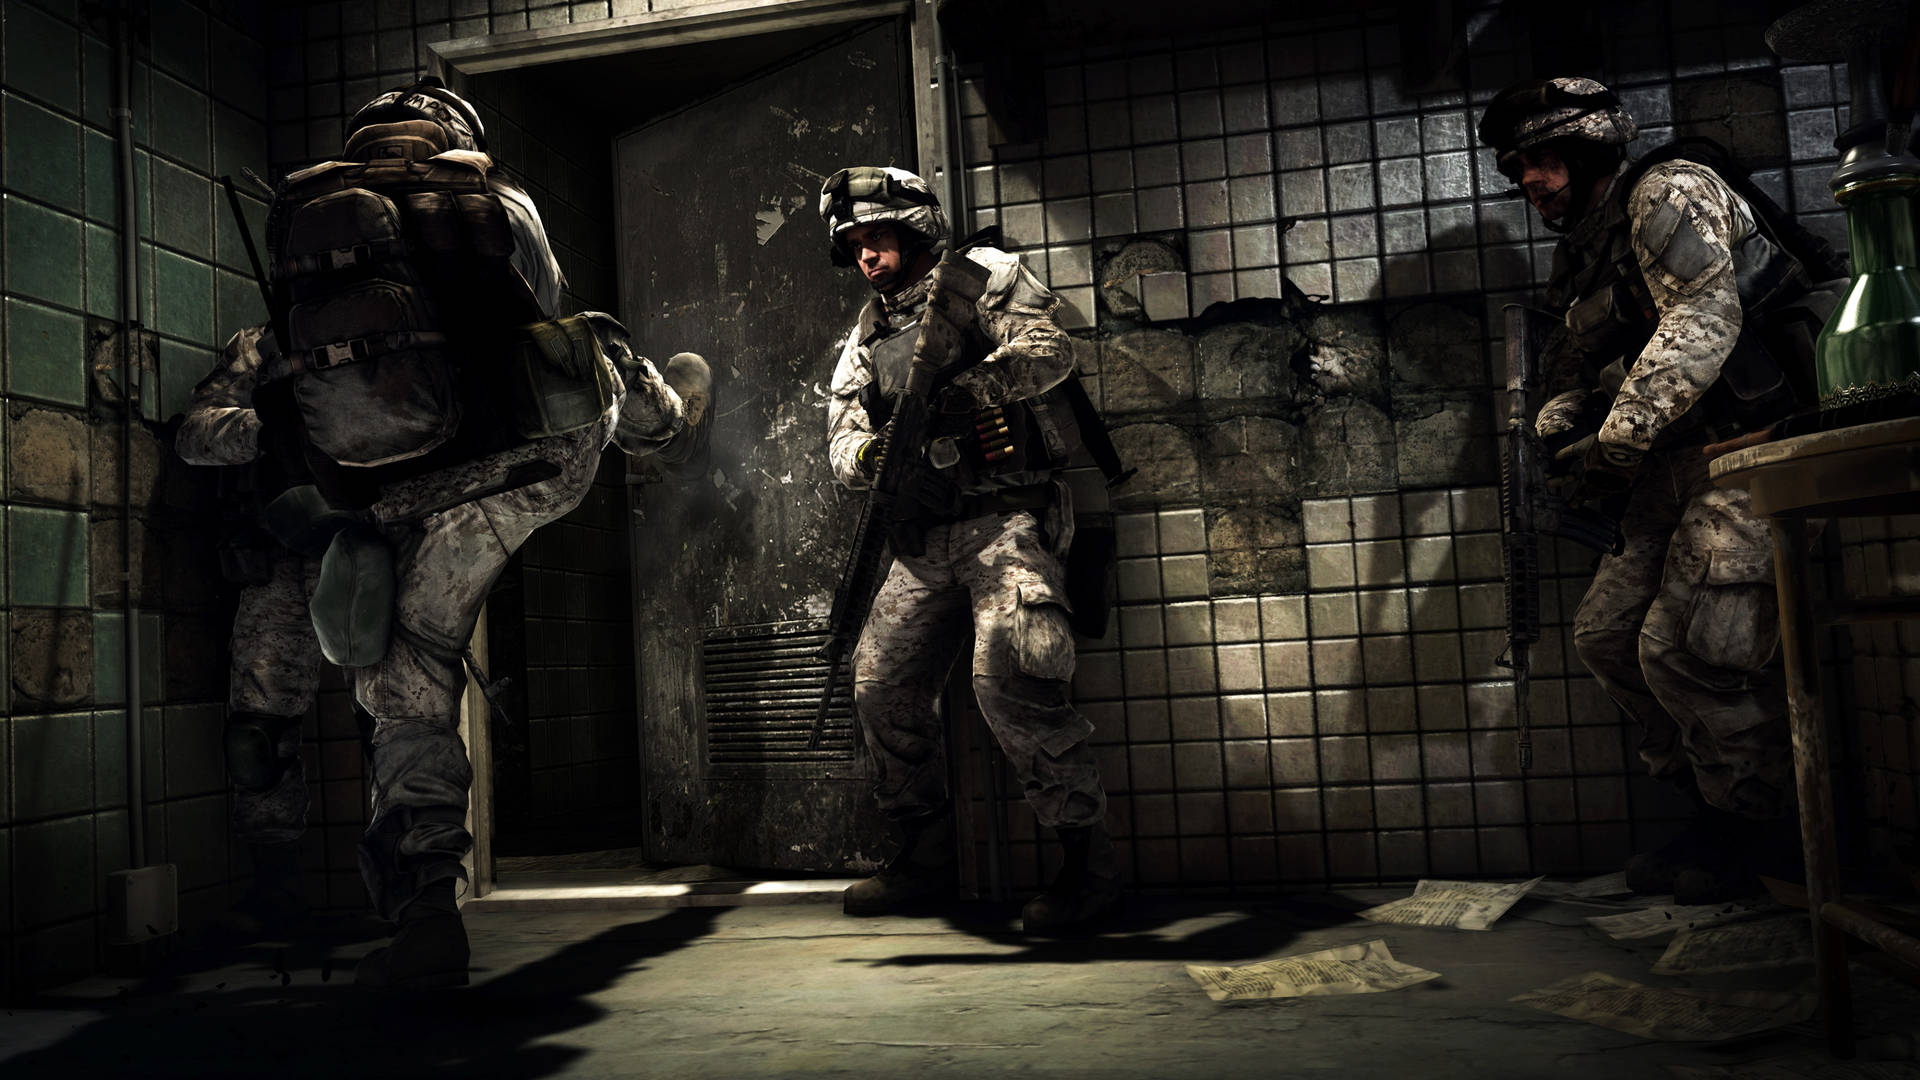 Impresionantefondo De Pantalla De Soldados De Battlefield 3 Dentro De Un Edificio, Juego De Video. Fondo de pantalla